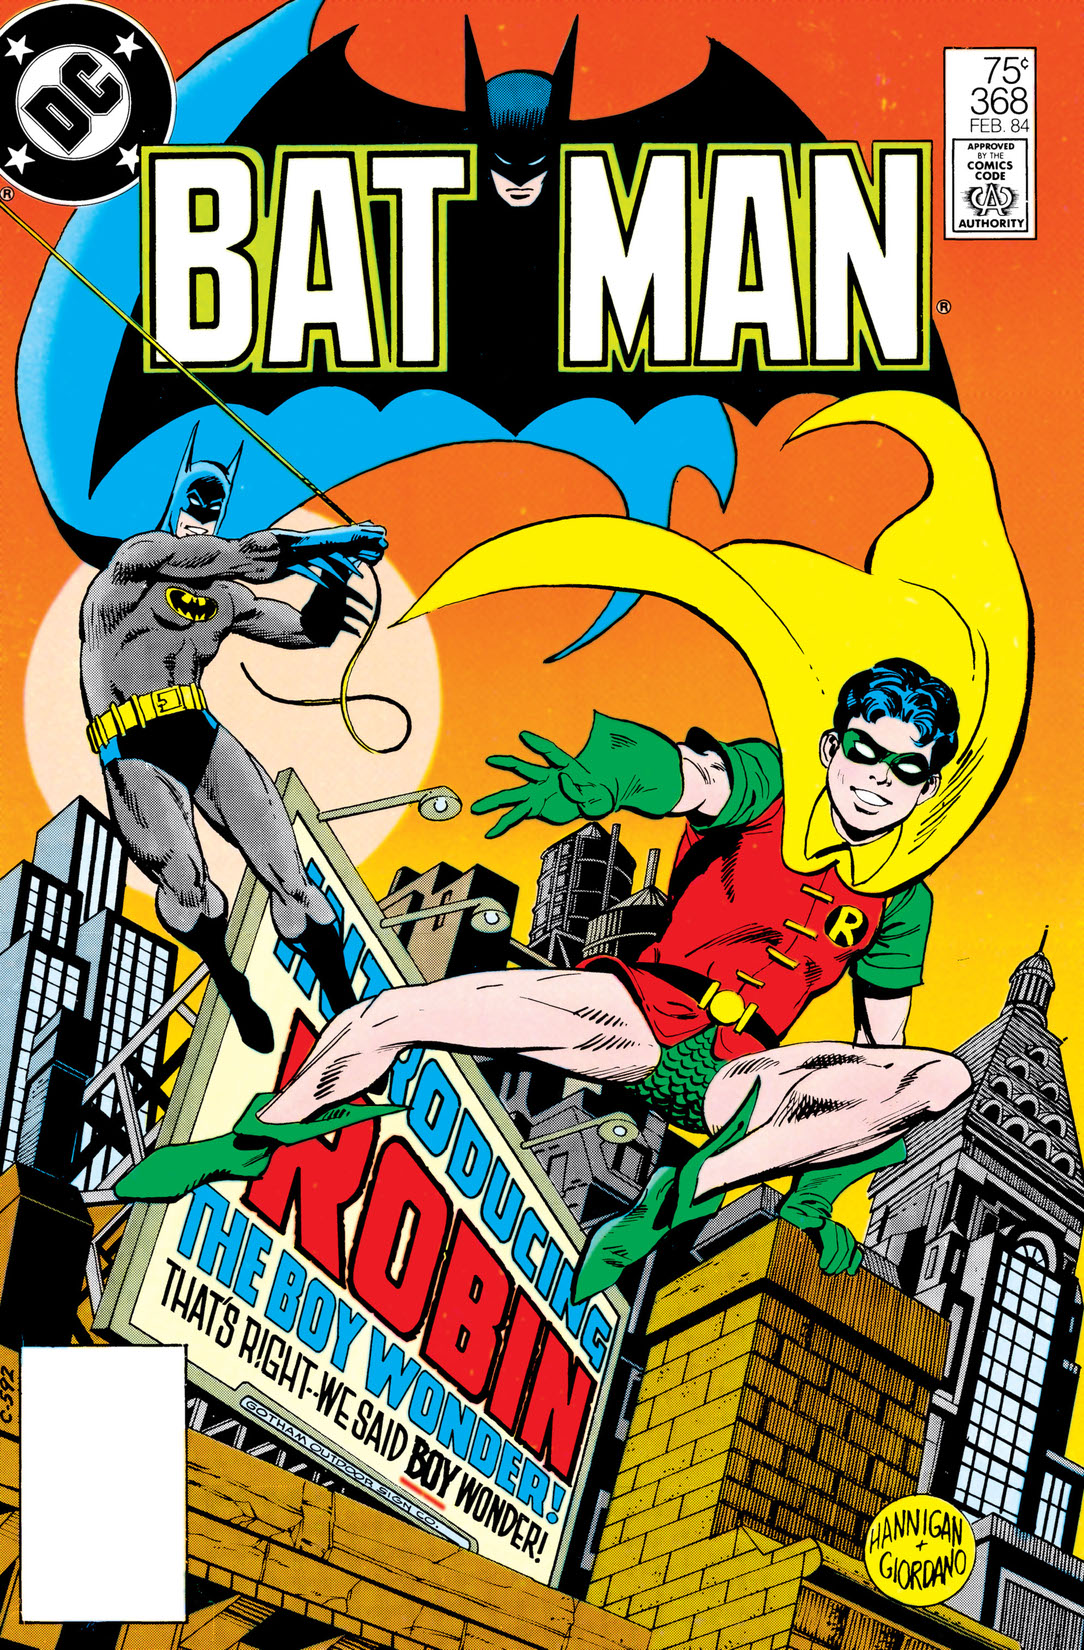 Batman (1940-) #368 preview images